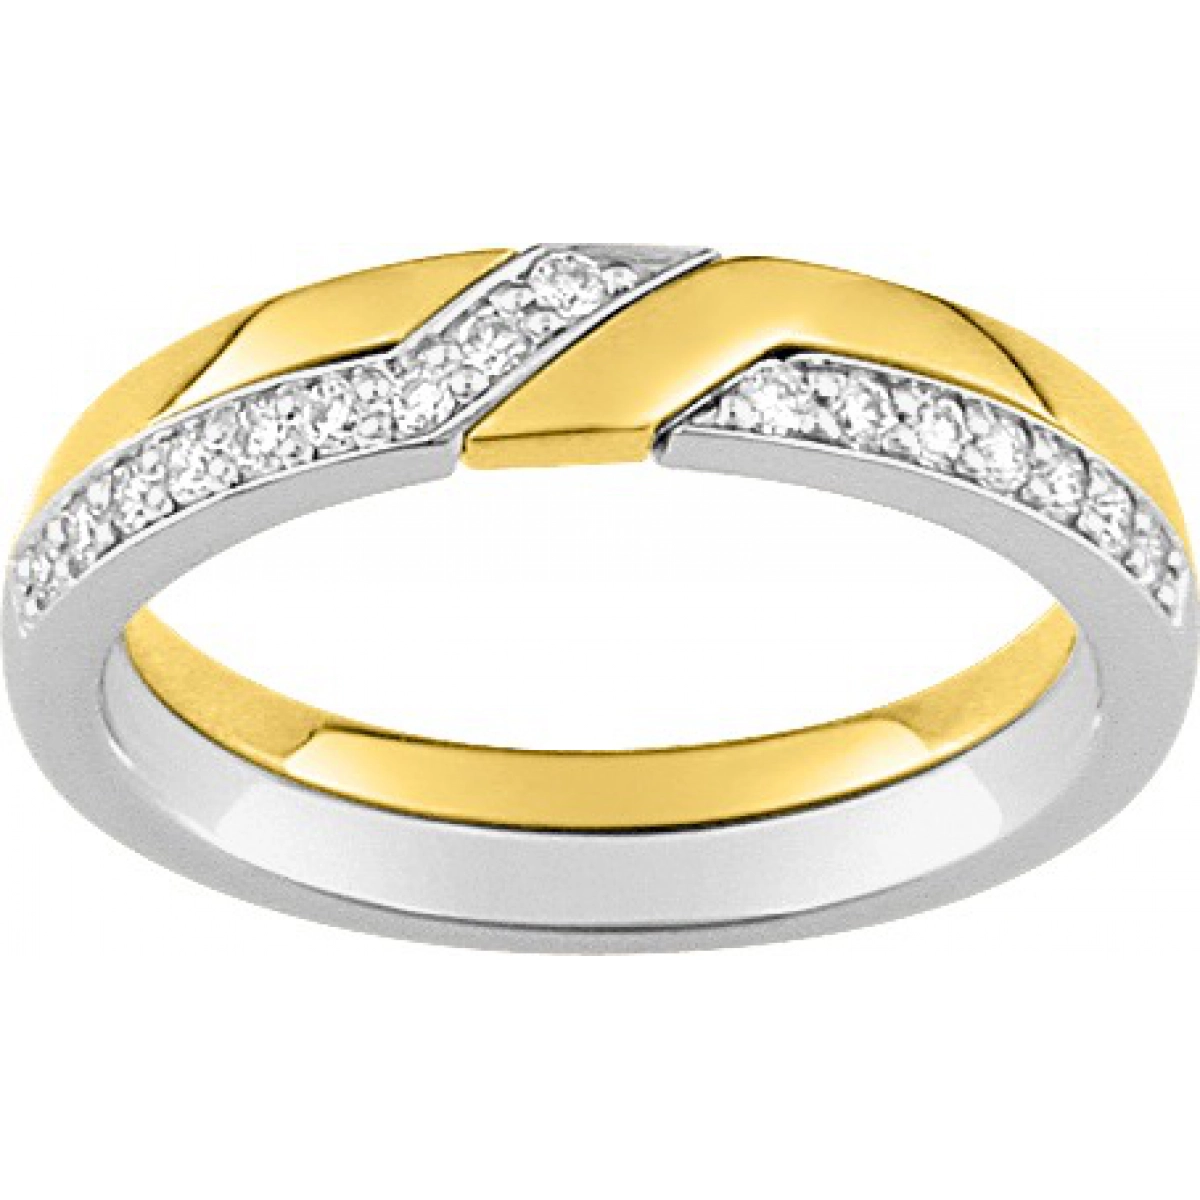 Wedding ring w. 16 diam 0.16ct GHSI 18K 2TG Lua Blanca  4E371DI0 - Size 48